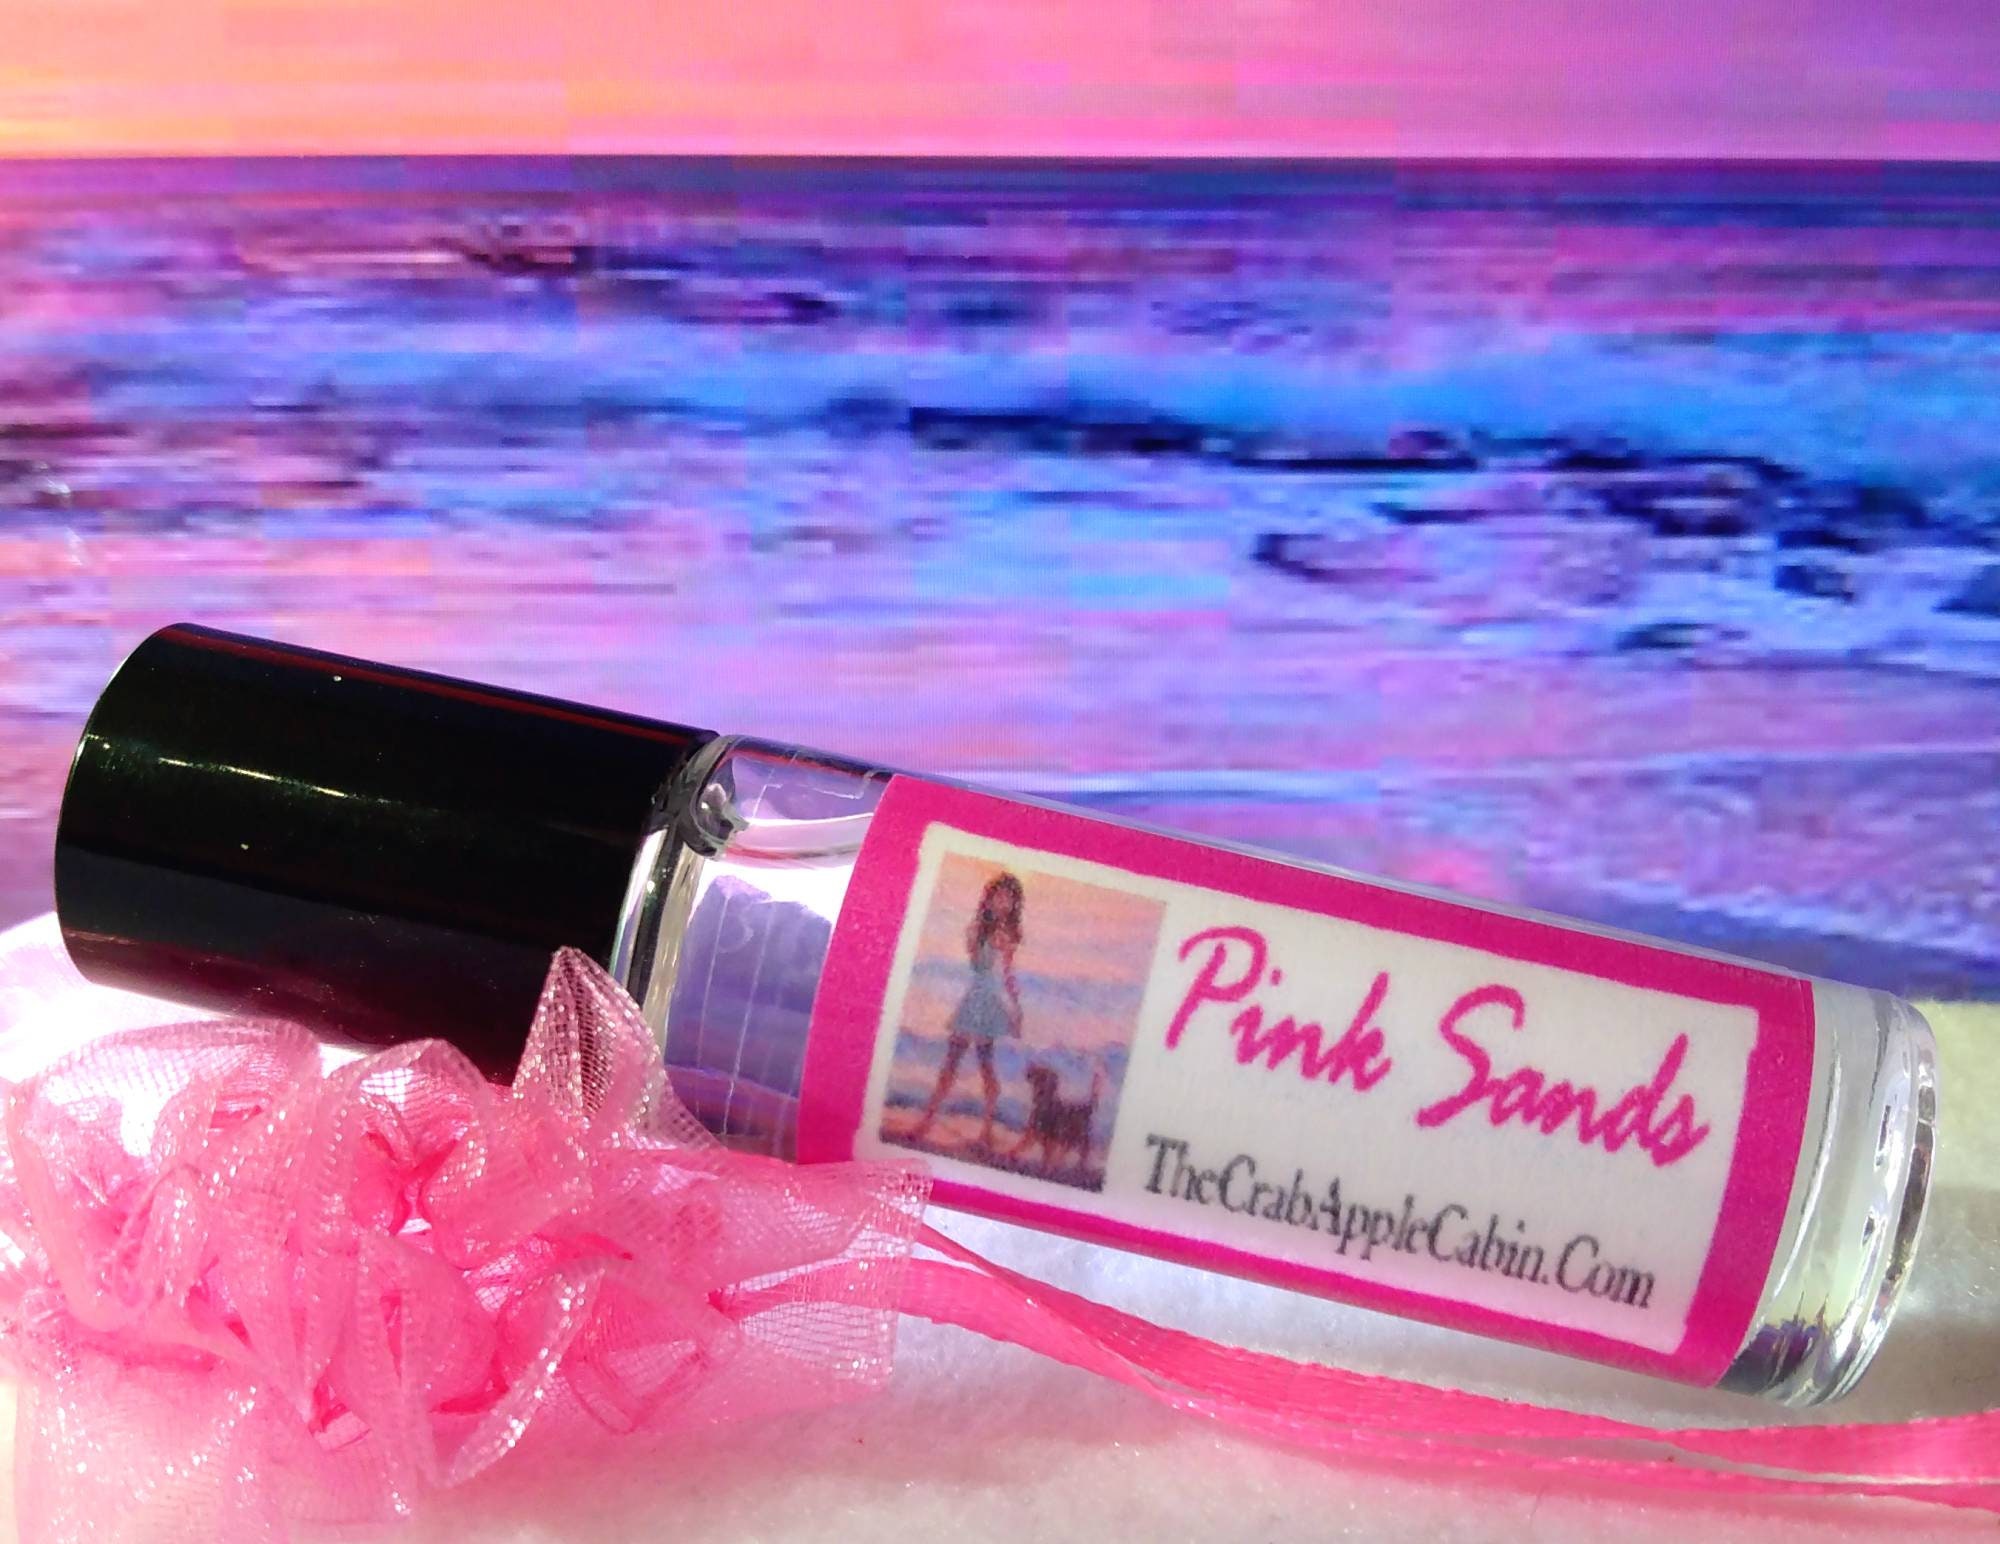 Pink Sands 2.5oz Wax Melt Paraffin Wax Soy Wax Melt Candle Wax 